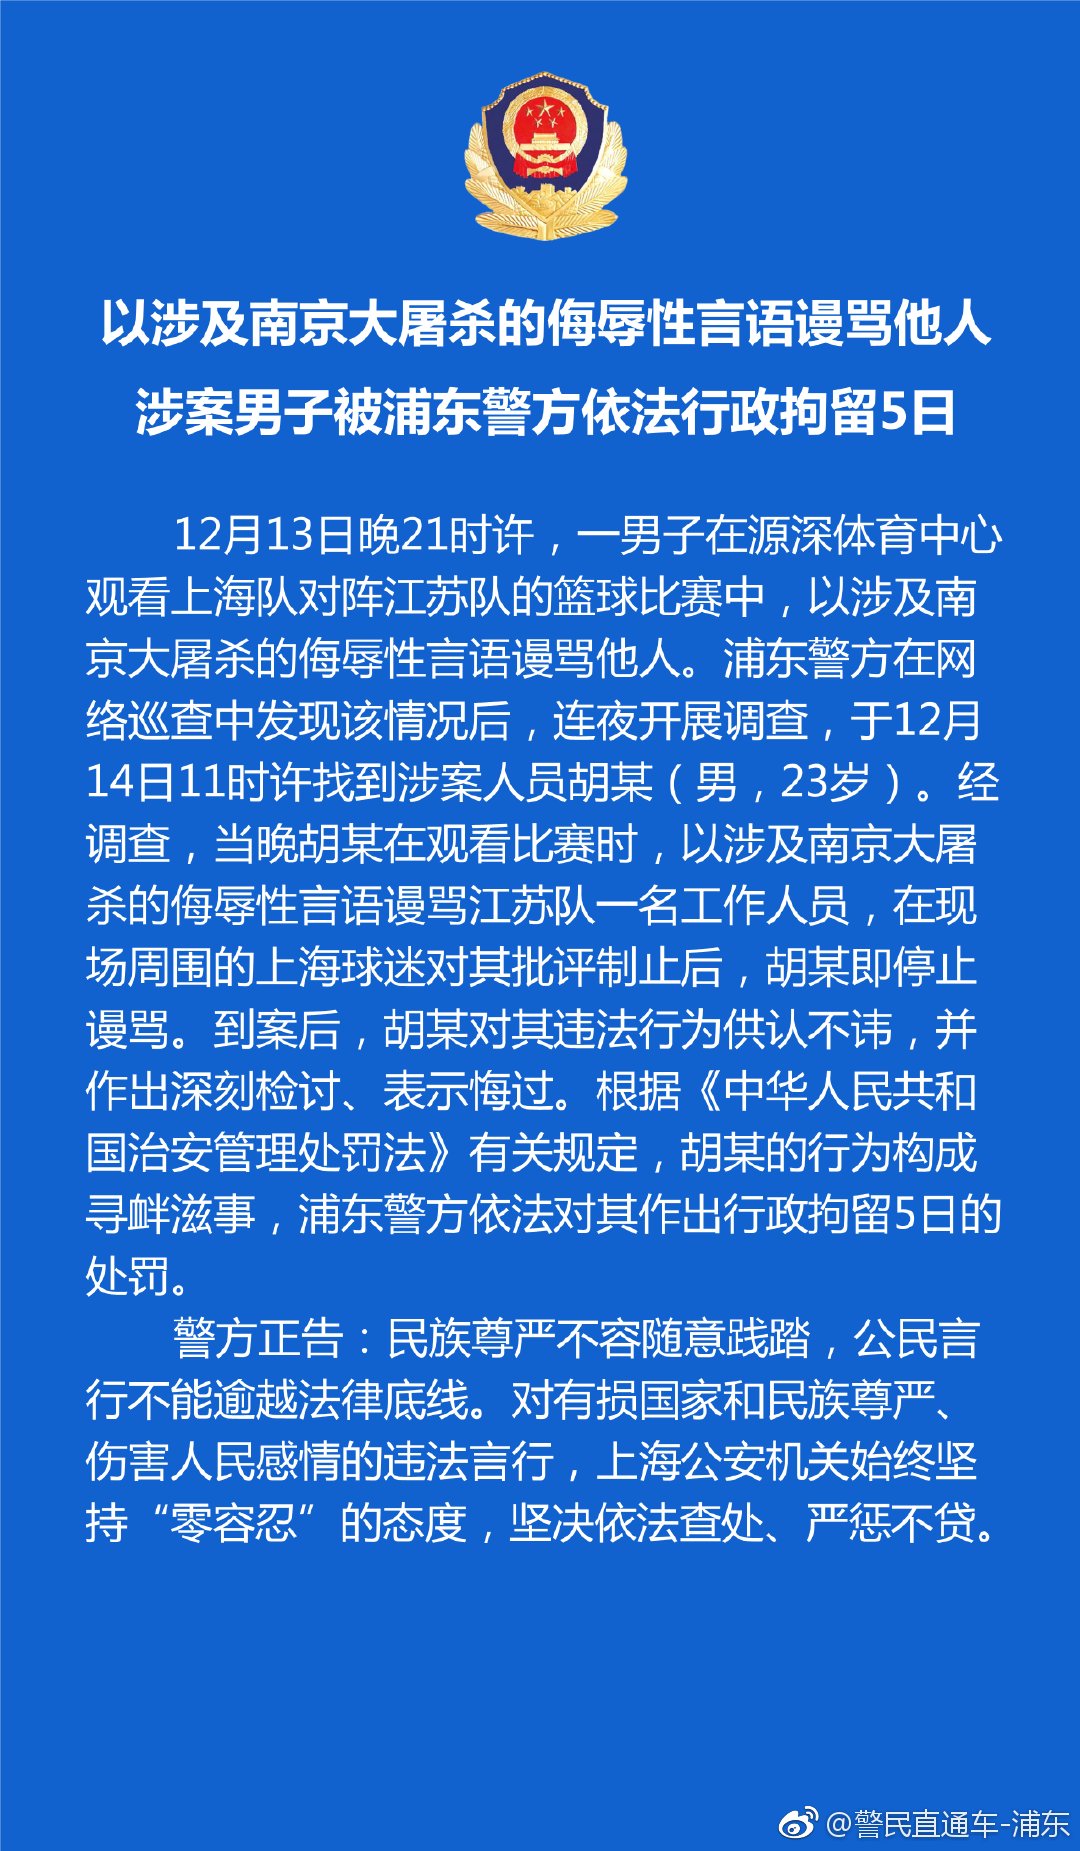 上海球迷用大屠杀历史骂南京球队 被拘5日